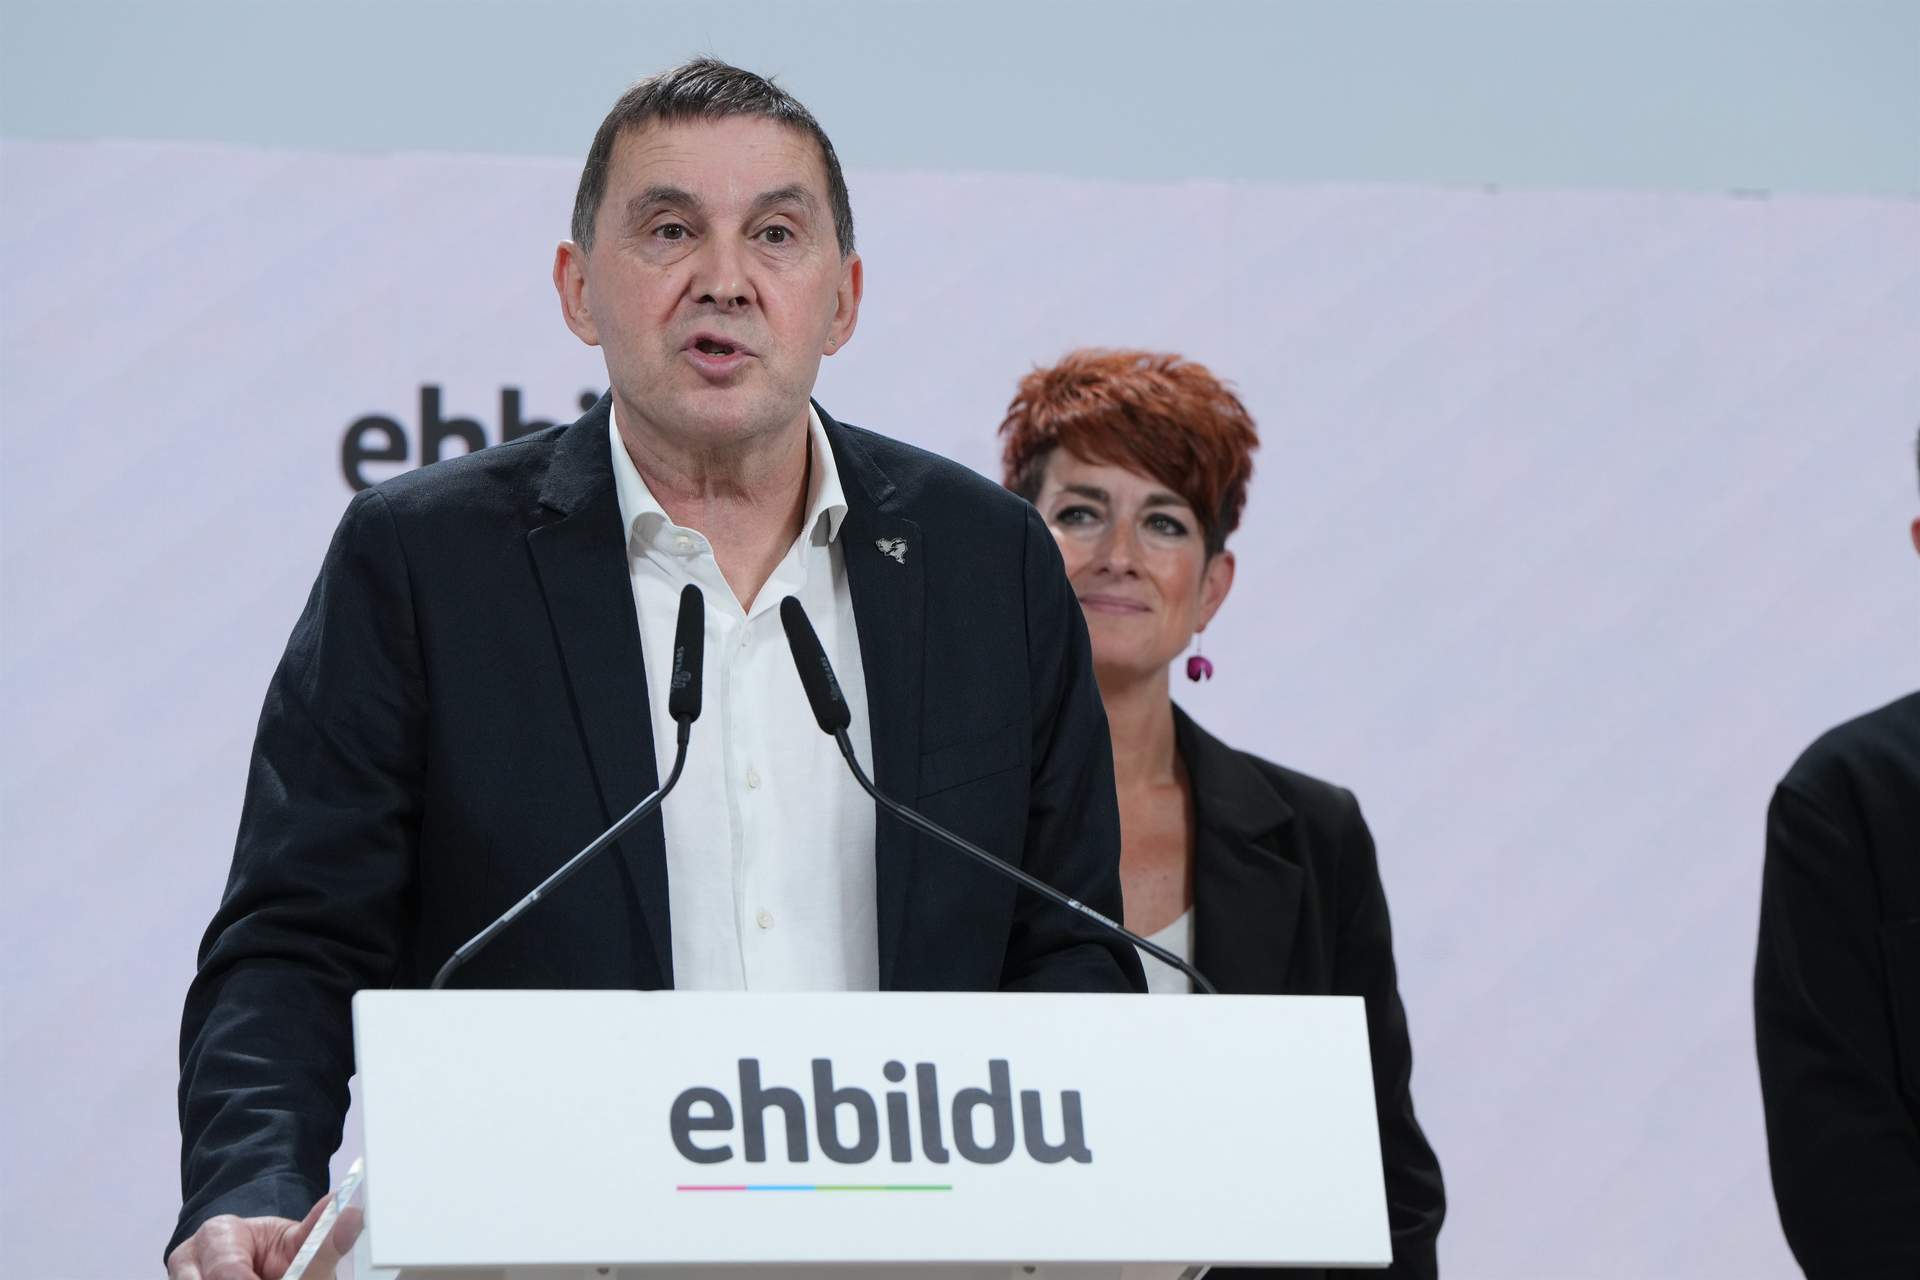 La ‘tormenta’ por las listas de EH Bildu le hace perder al PSOE cuatro gobiernos autonómicos según datos internos.